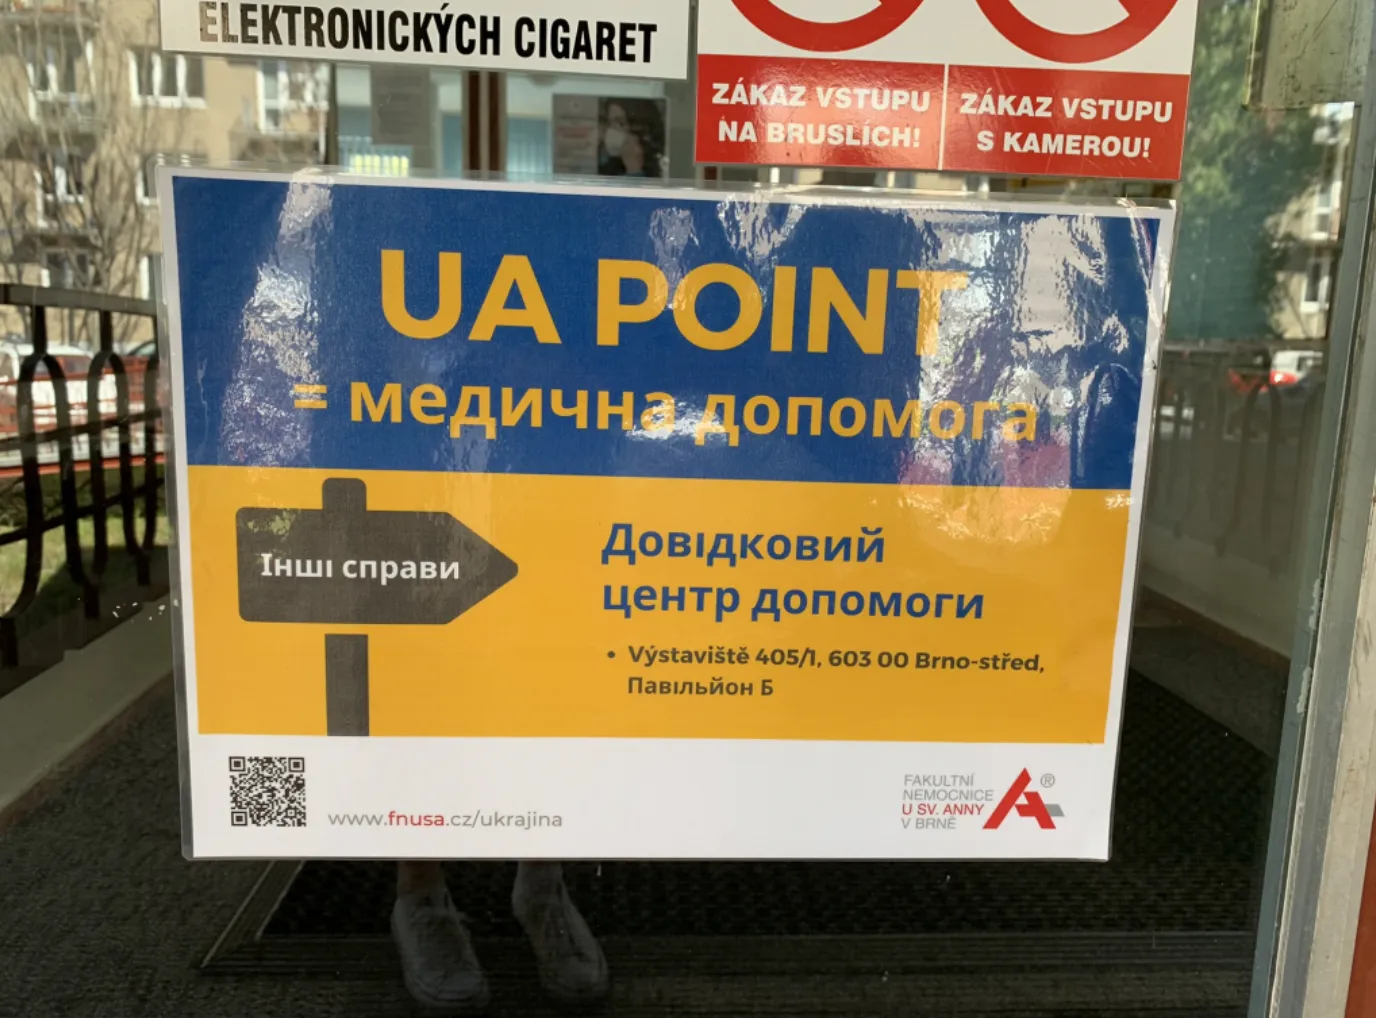 UA point в Брно